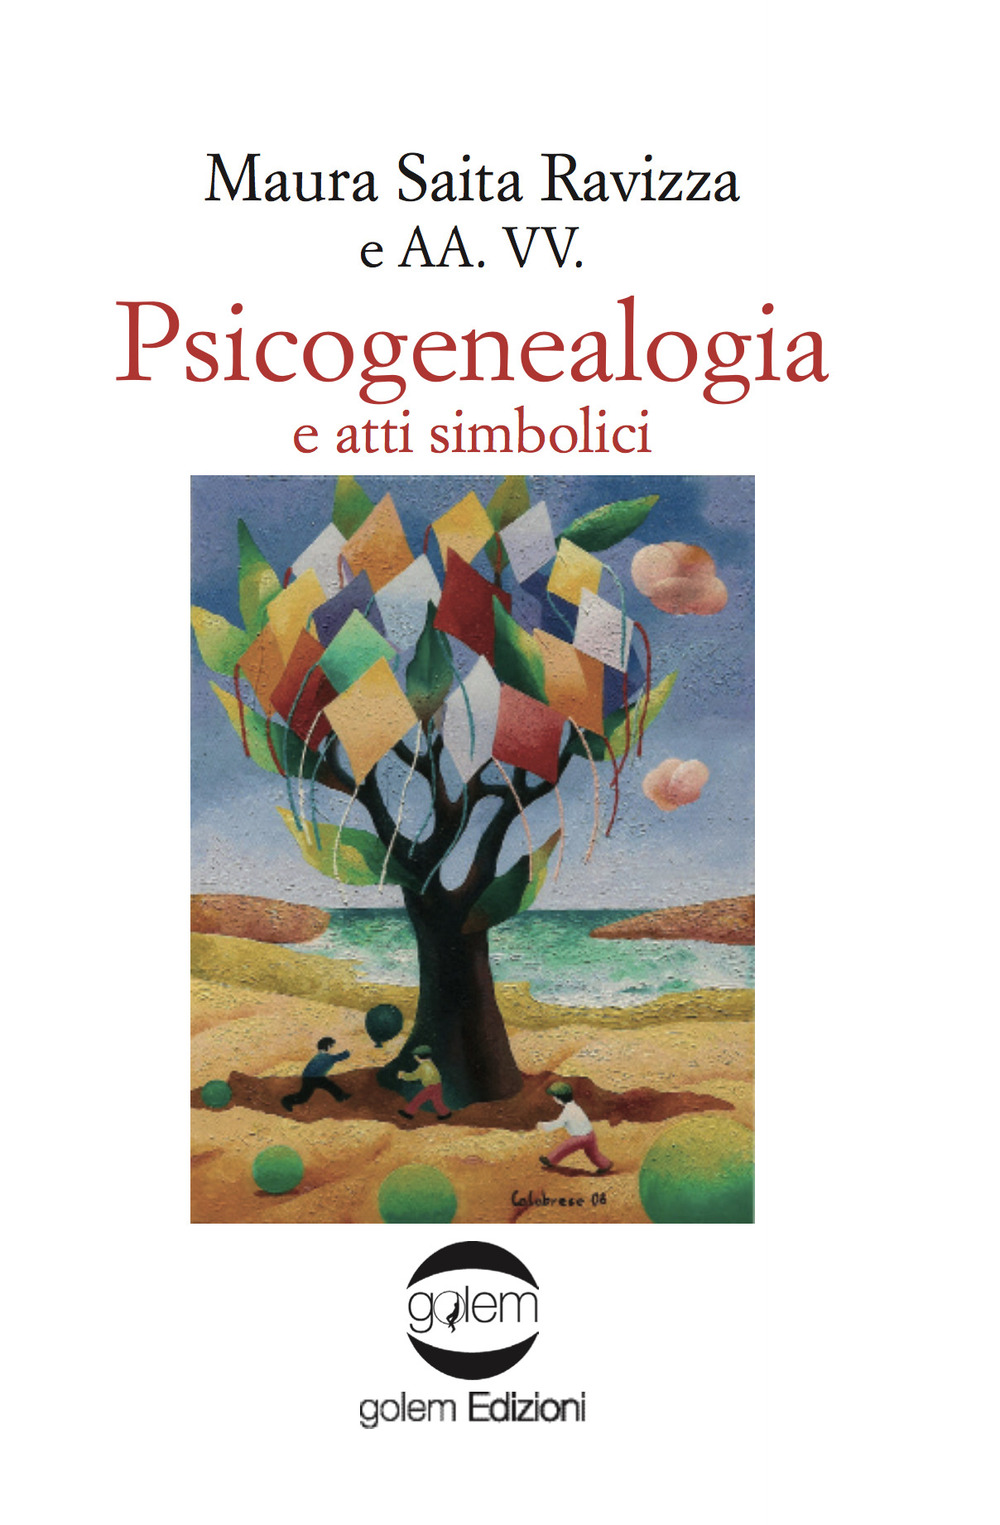 Libri Saita Ravizza Maura - Psicogenealogia E Atti Simbolici NUOVO SIGILLATO, EDIZIONE DEL 14/04/2017 SUBITO DISPONIBILE